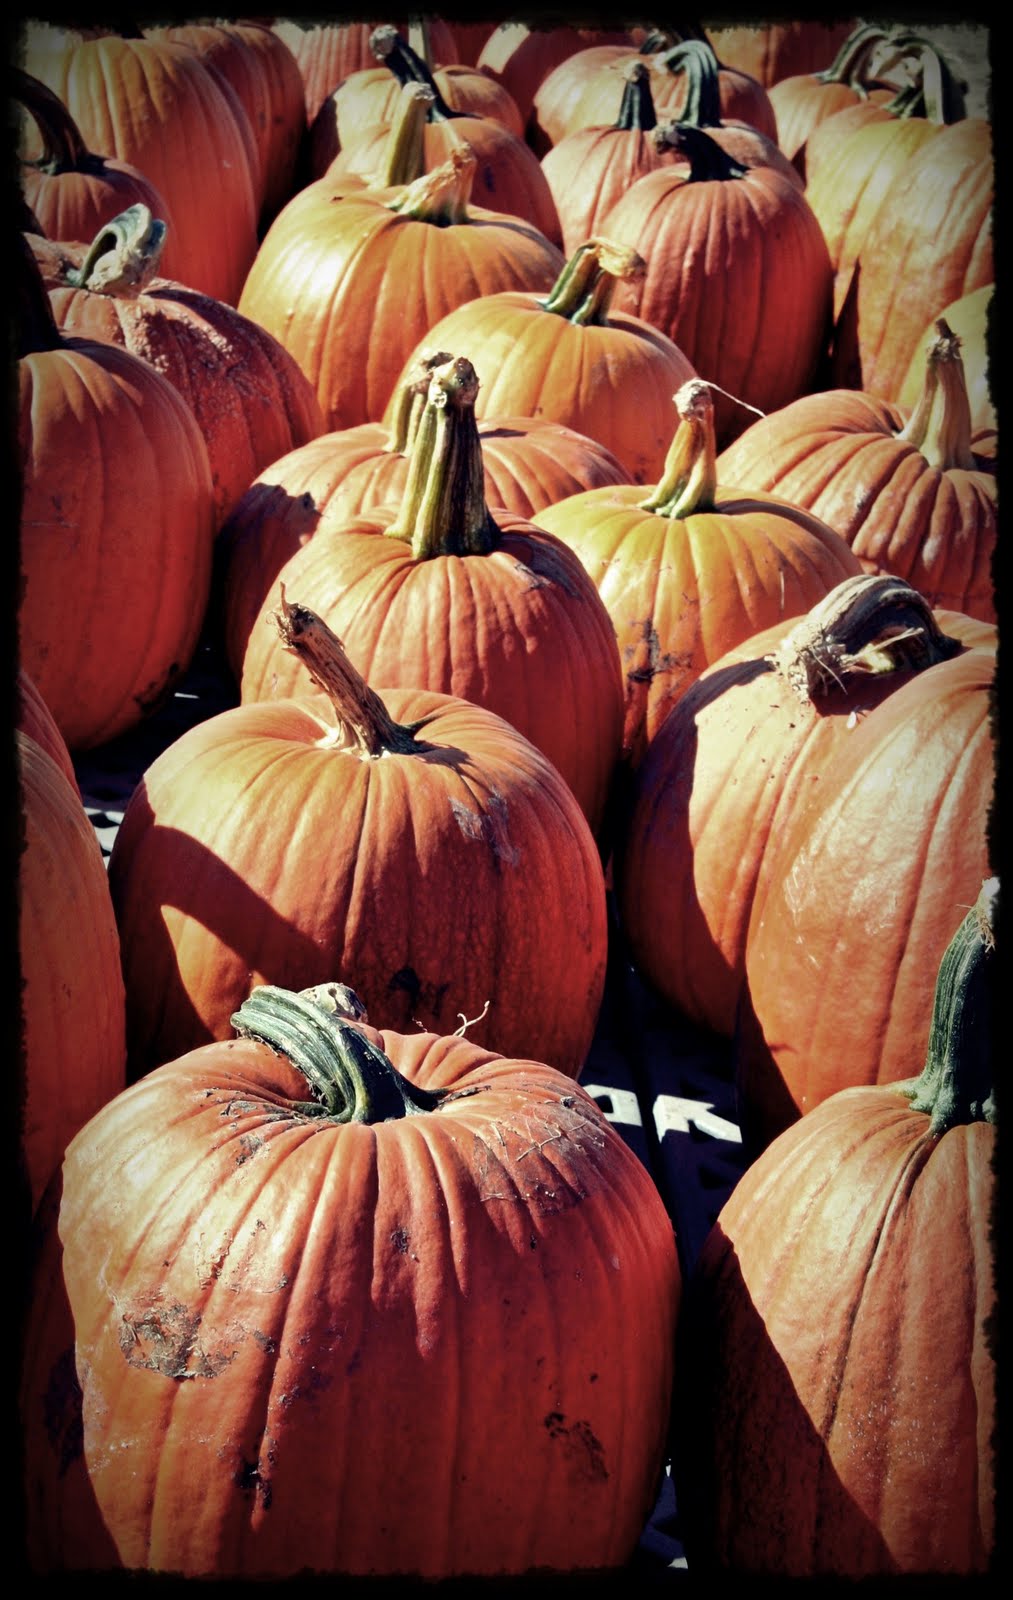 [pumpkin.JPG]